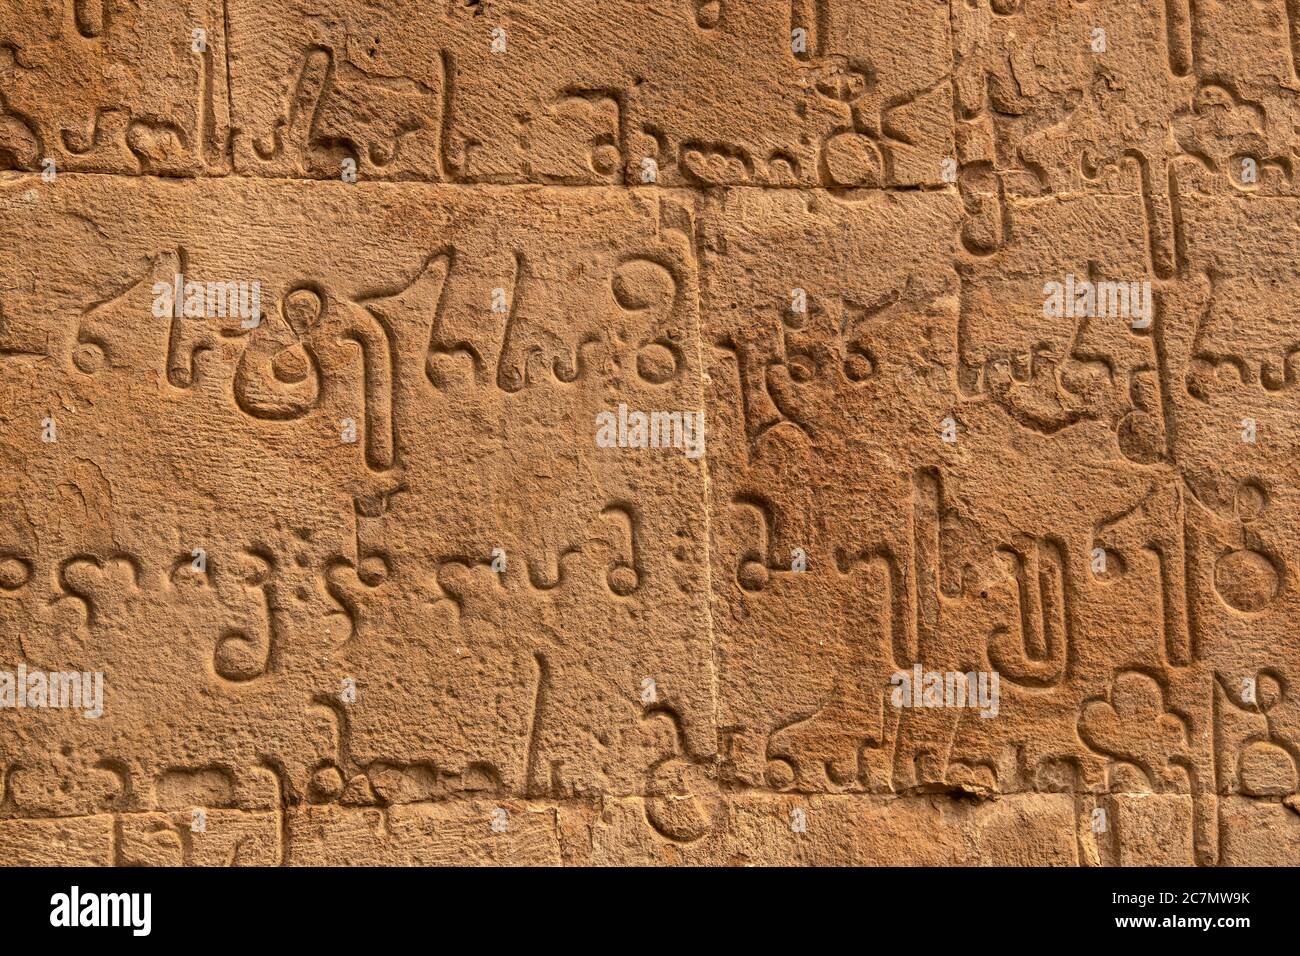 Alte Schnitzerei des Mkhedruli Alphabets entwickelt zwischen dem 11. Und 13. Jahrhundert - offizielle Sprache Georgiens Stockfoto